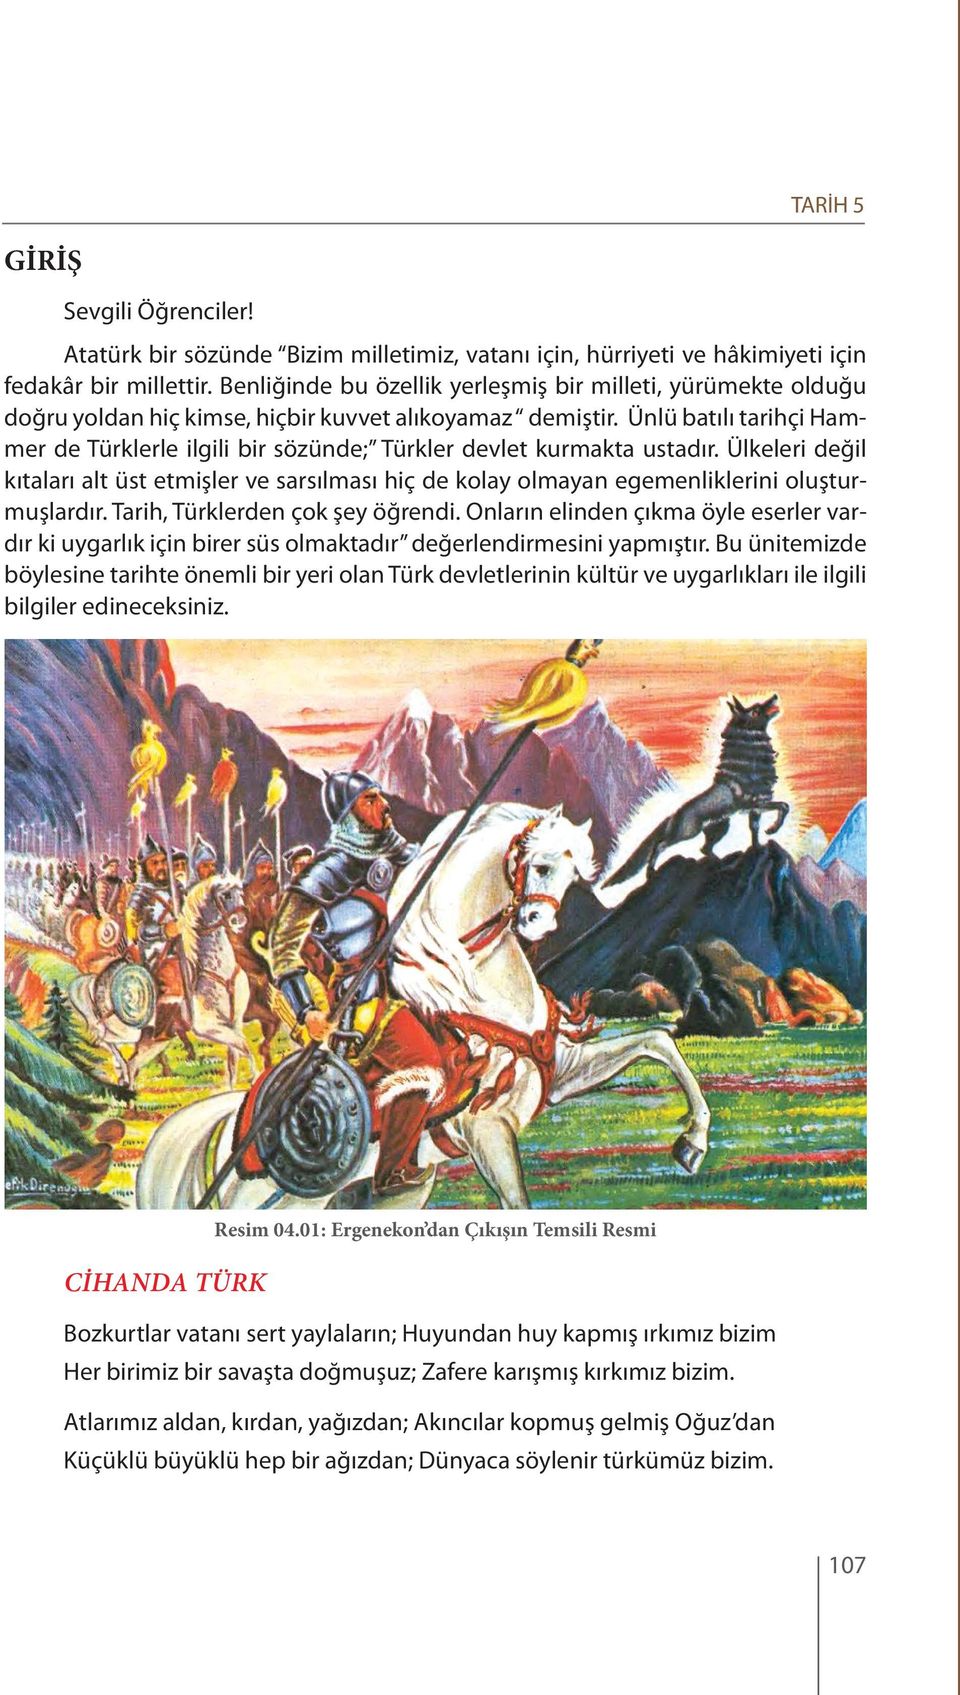 Ünlü batılı tarihçi Hammer de Türklerle ilgili bir sözünde; Türkler devlet kurmakta ustadır.